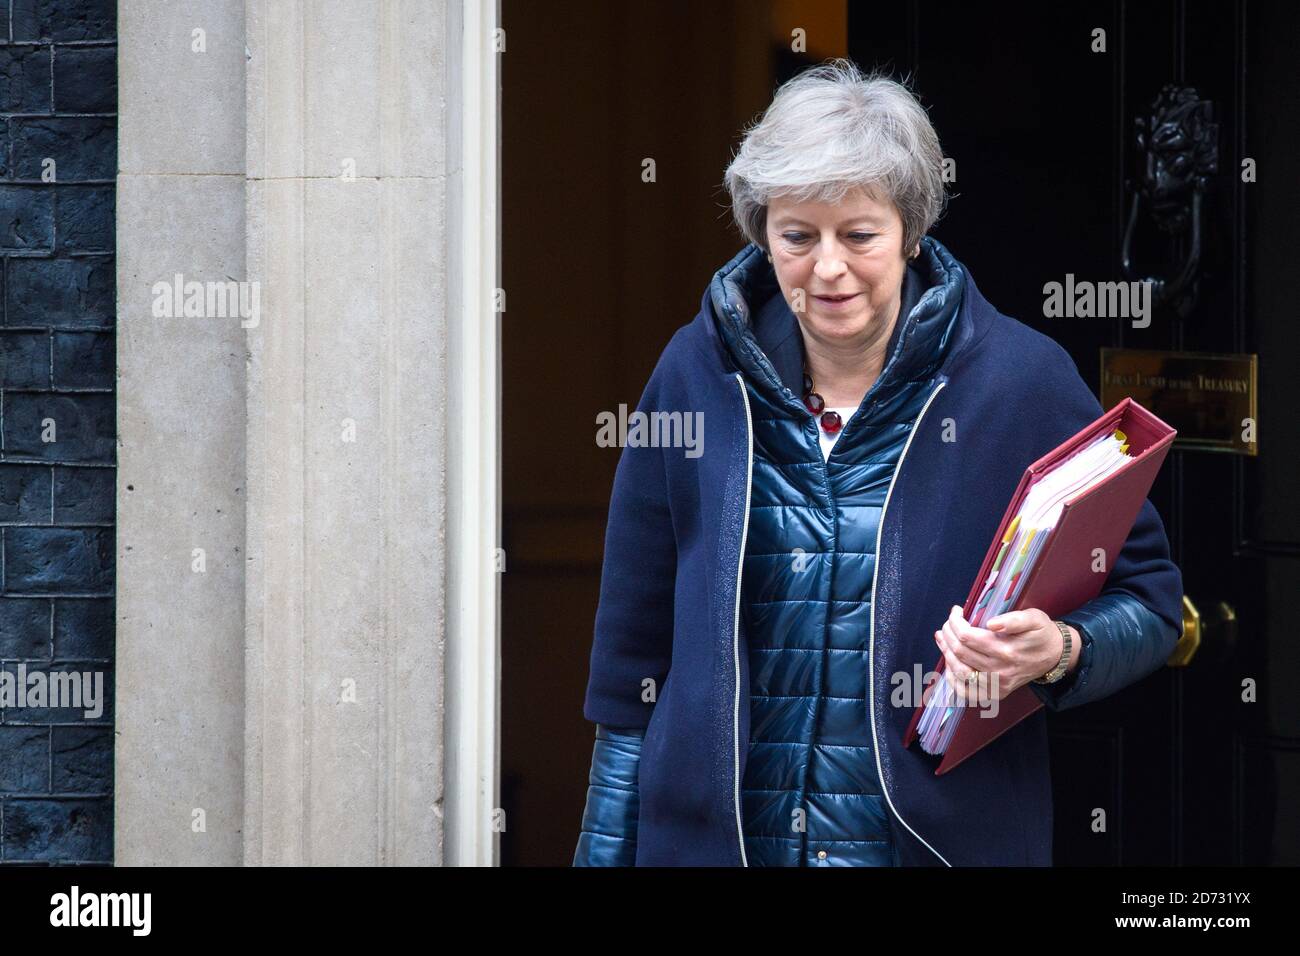 Premierministerin Theresa May verlässt 10 Downing Street, London, vor den Fragen des Premierministers. Bilddatum: Mittwoch, 21. November 2018. Bildnachweis sollte lauten: Matt Crossick/ EMPICS Entertainment. Stockfoto